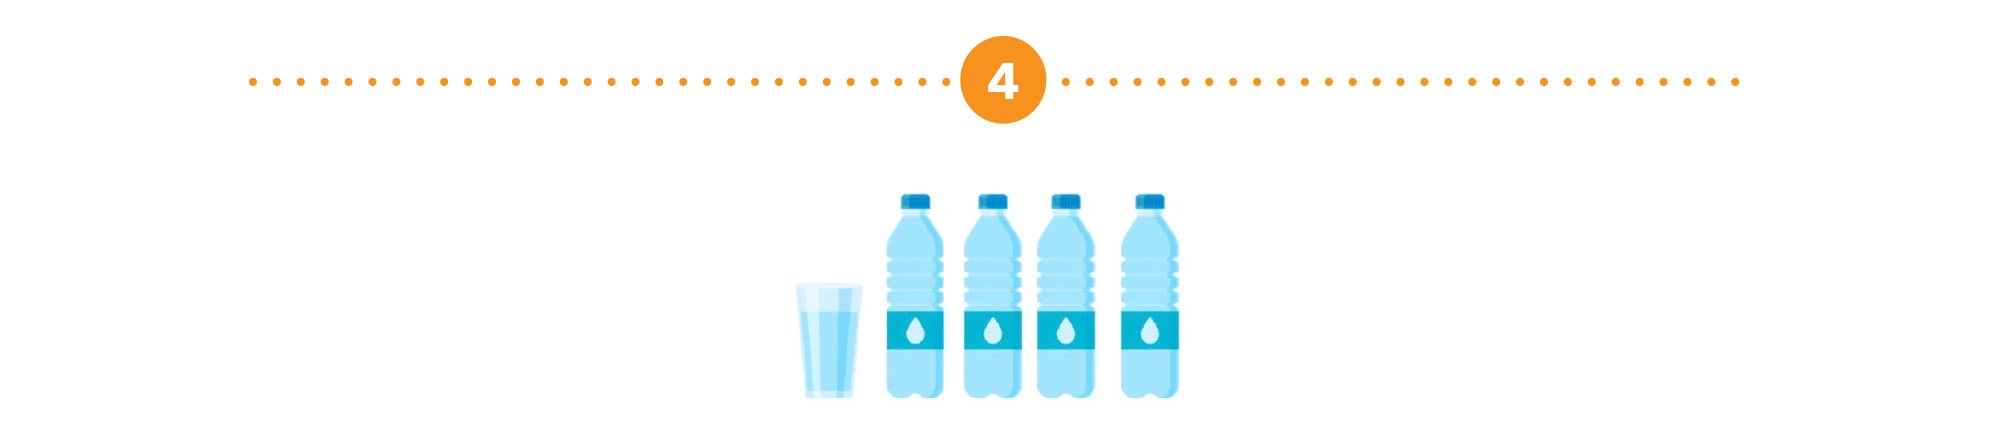 Illustration représentant quatre bouteilles d’eau et un verre rempli d’eau.